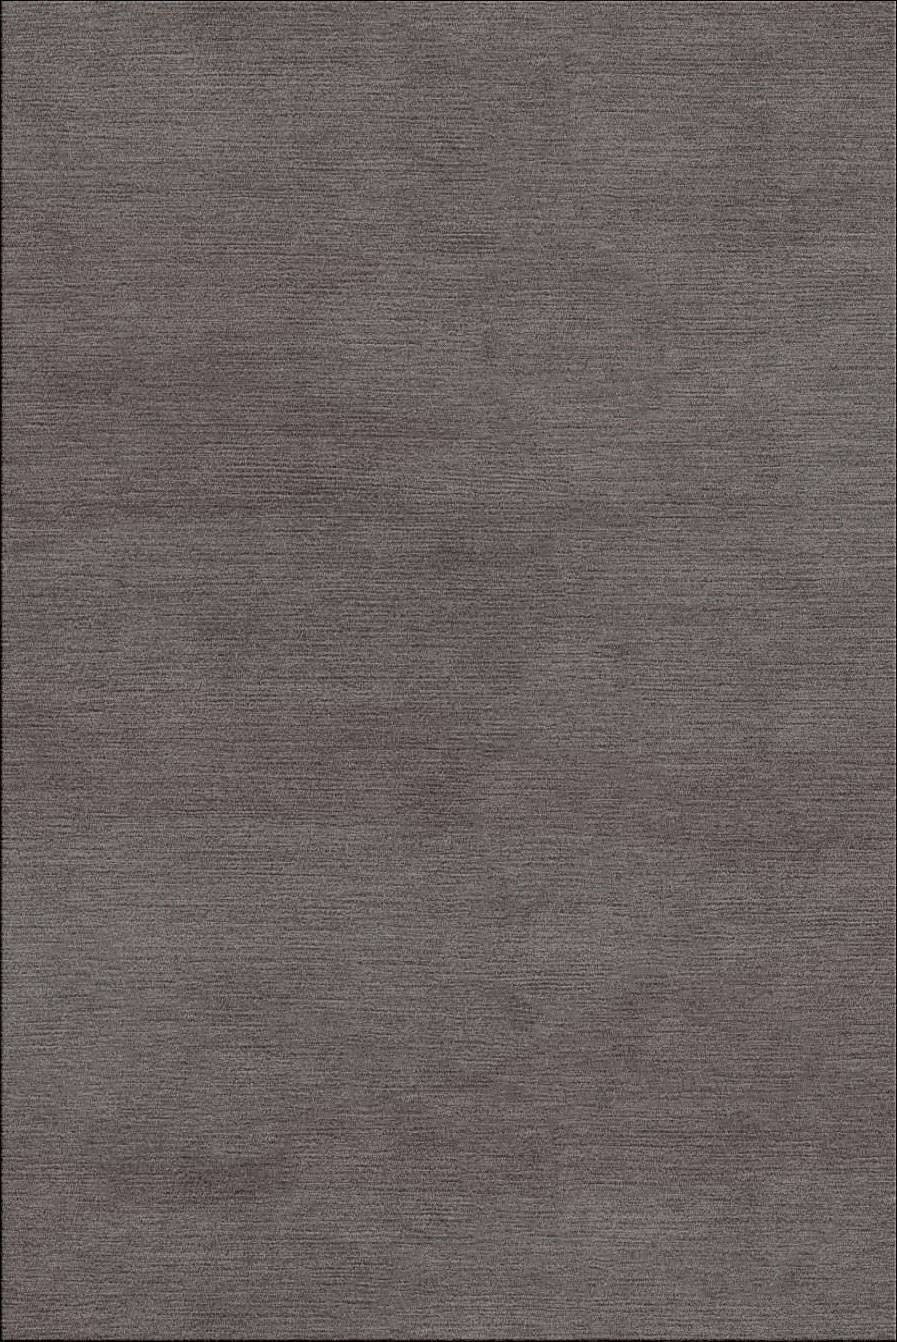 Plain Quartz Grey Rug by Rug Couture 